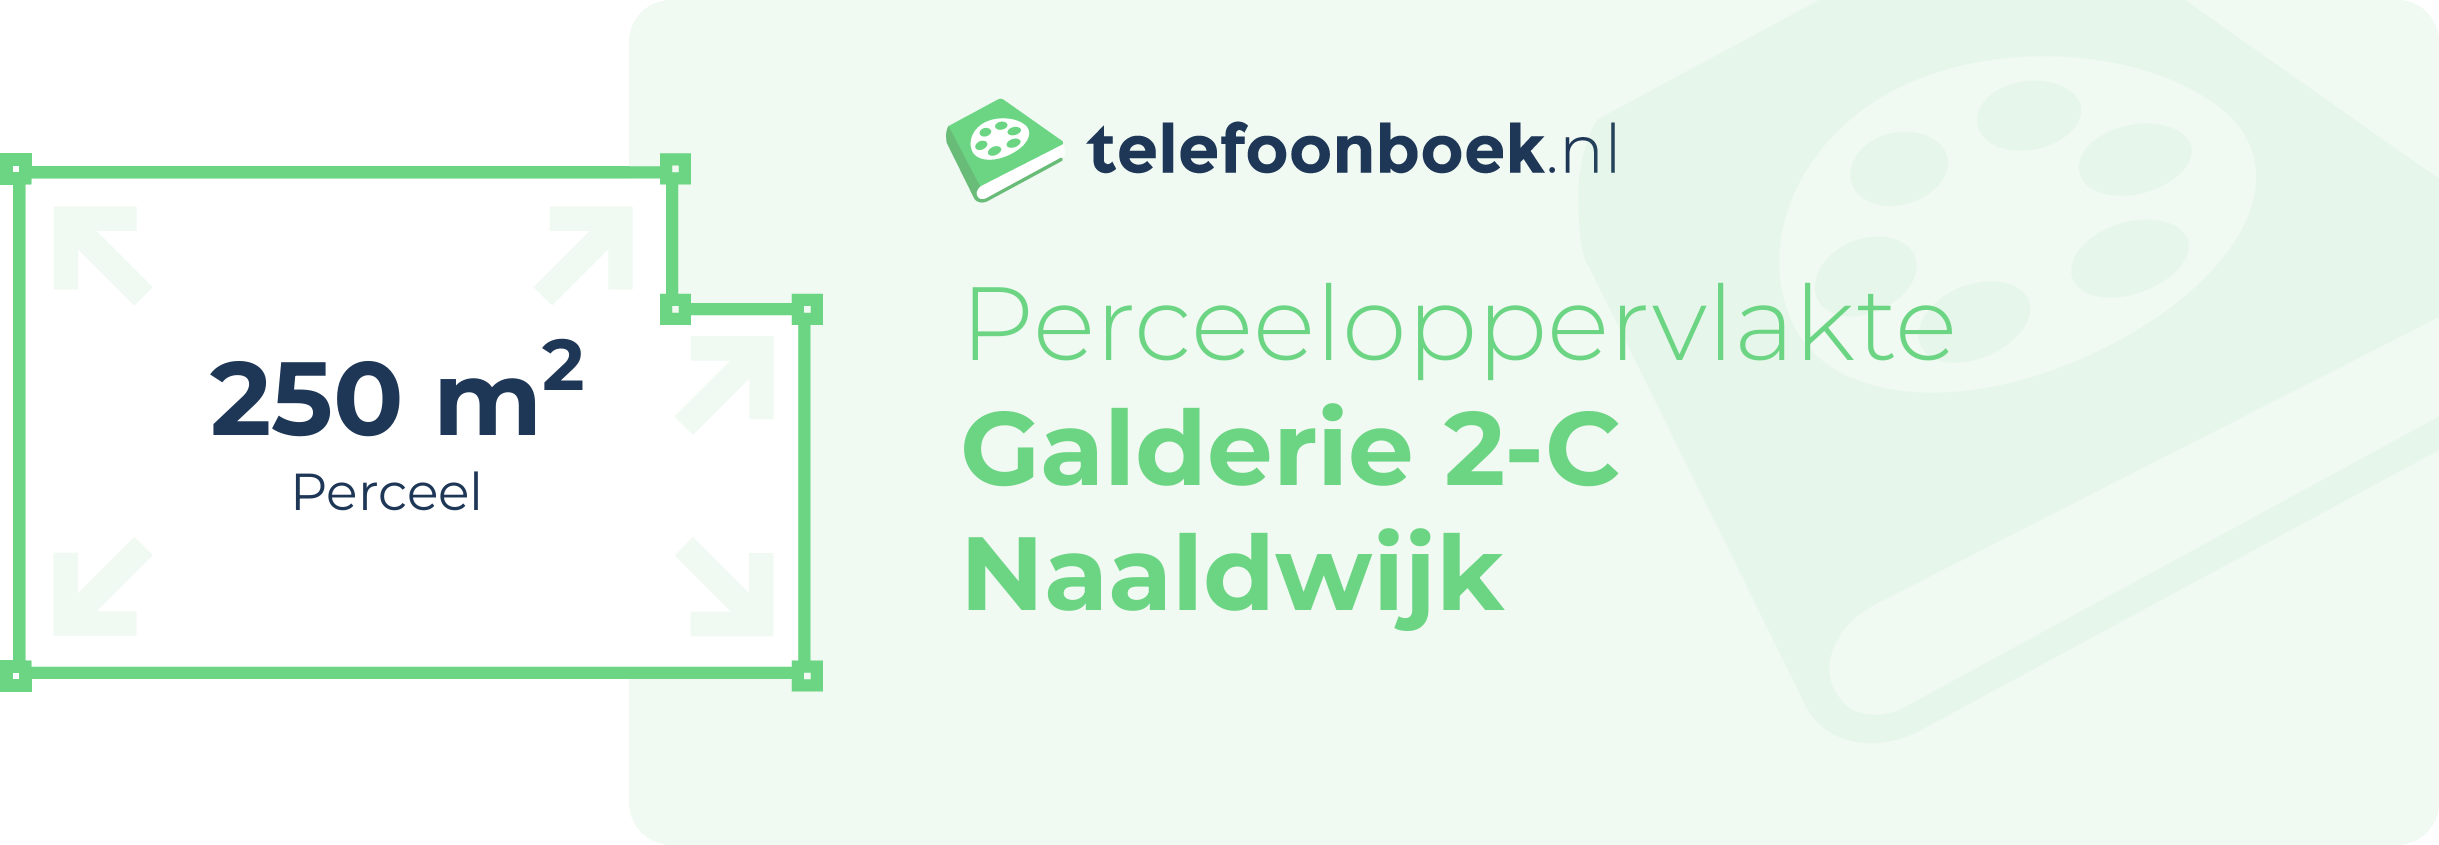 Perceeloppervlakte Galderie 2-C Naaldwijk